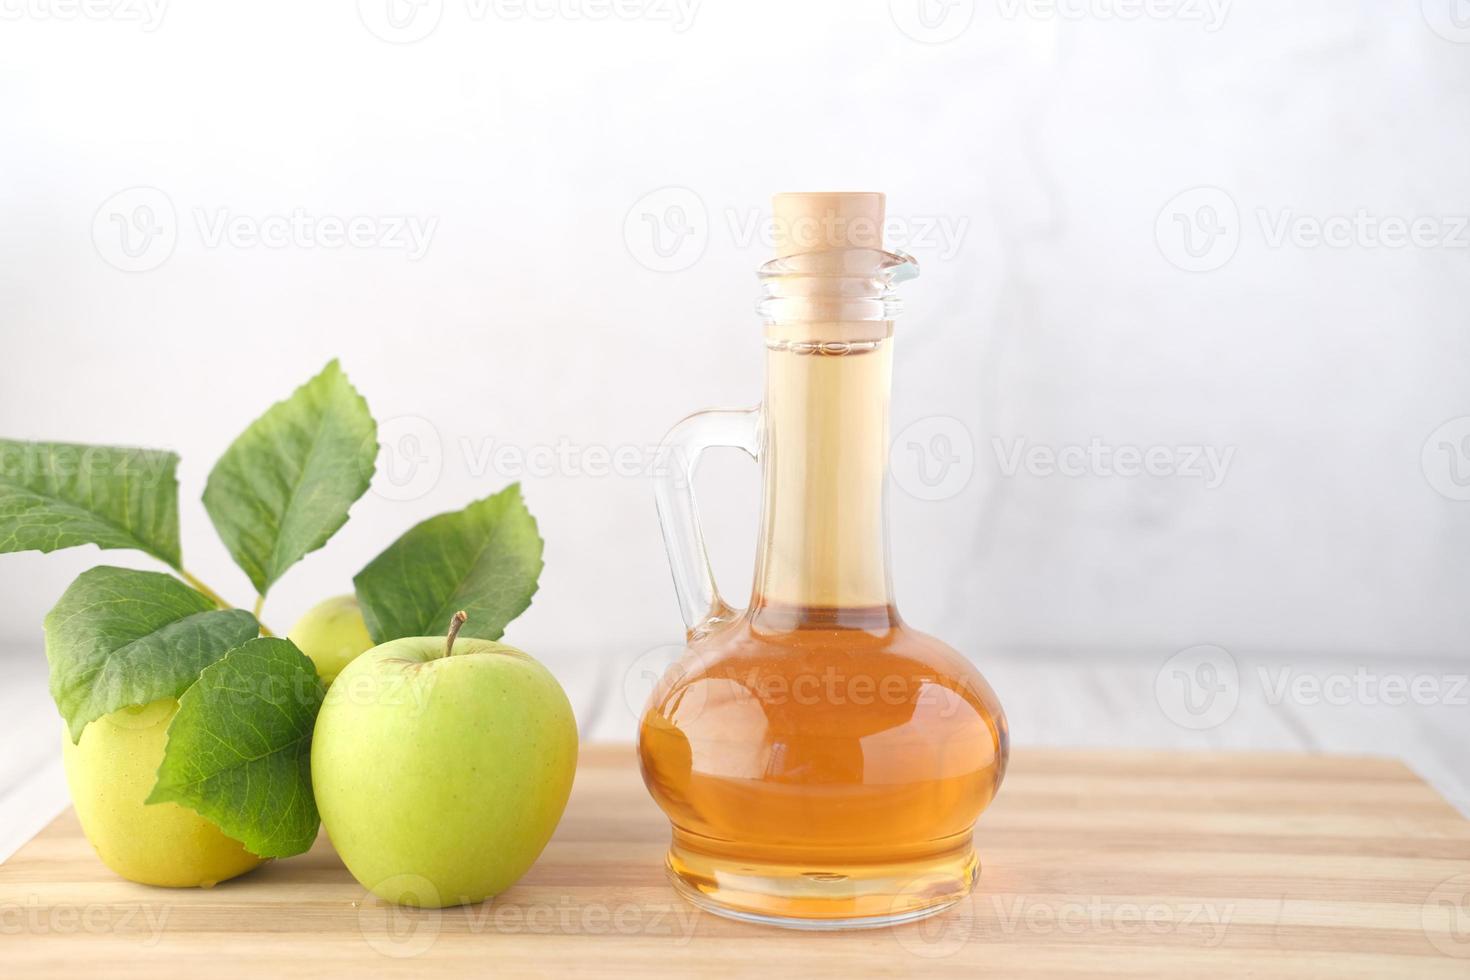 vinagre de maçã em frasco de vidro com maçã verde fresca na mesa foto